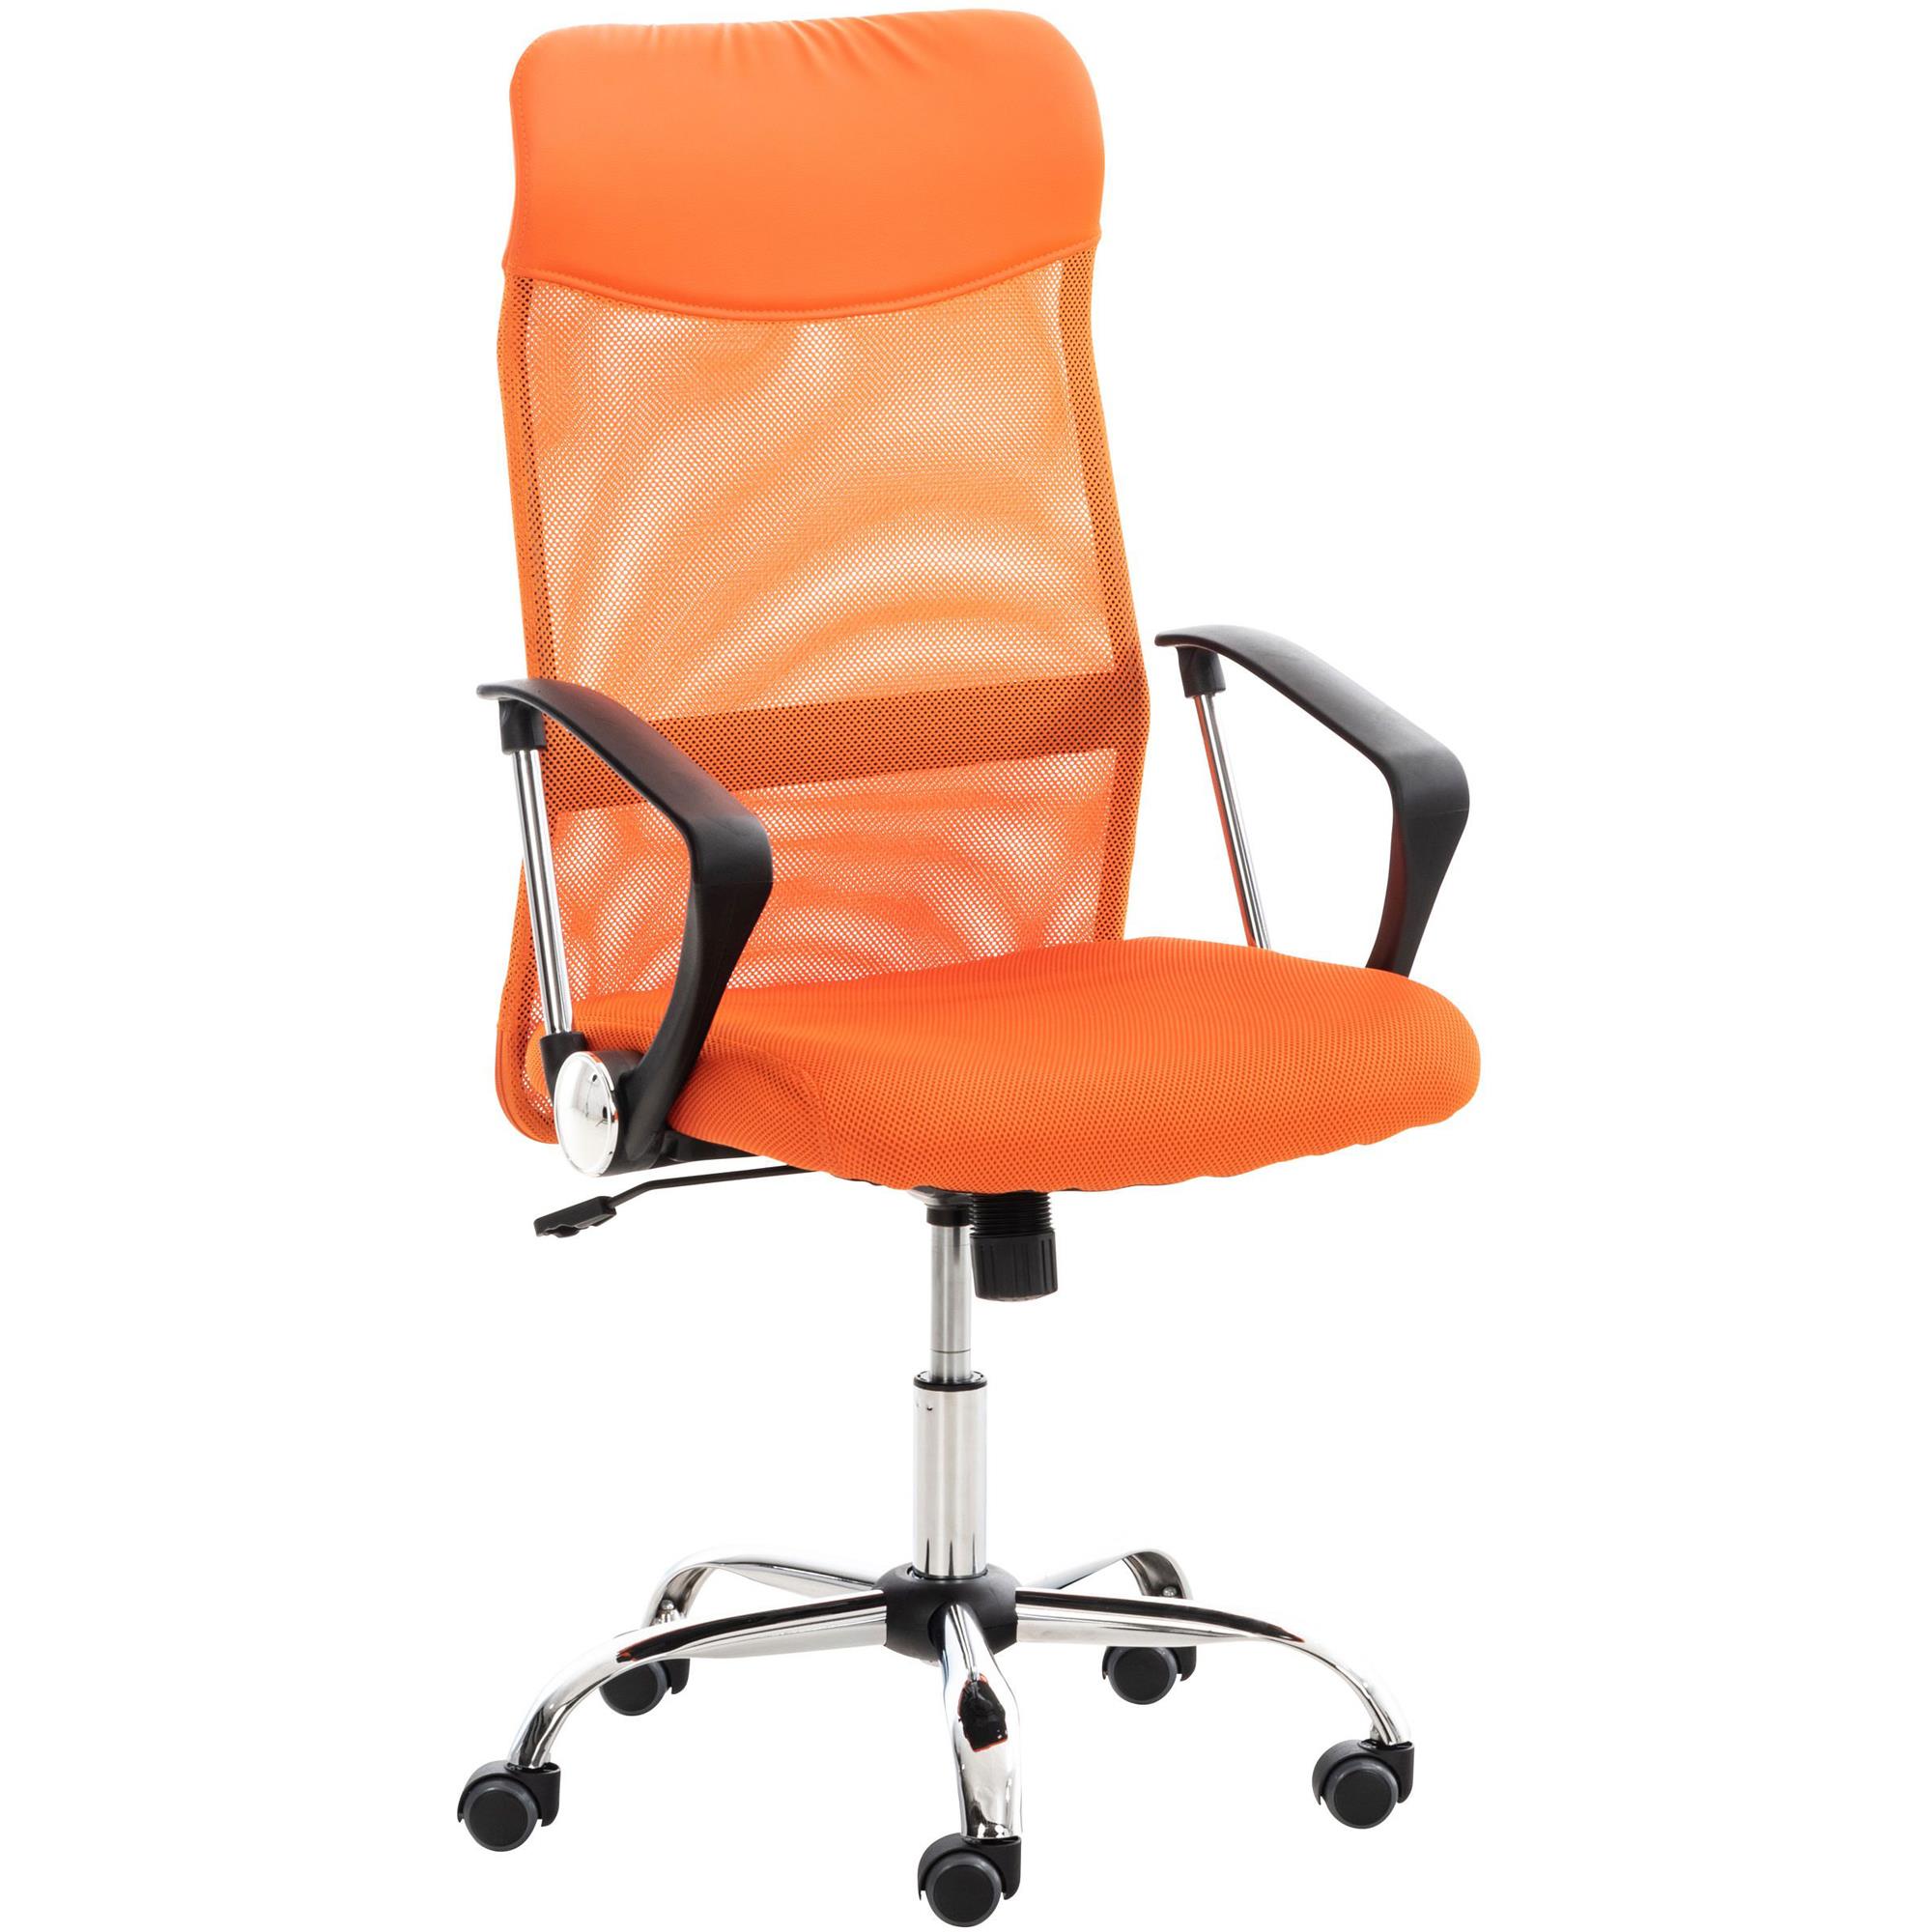 Silla de Oficina ASPEN, Malla Transpirable, asiento acolchado y Precio increíble, Color Naranja